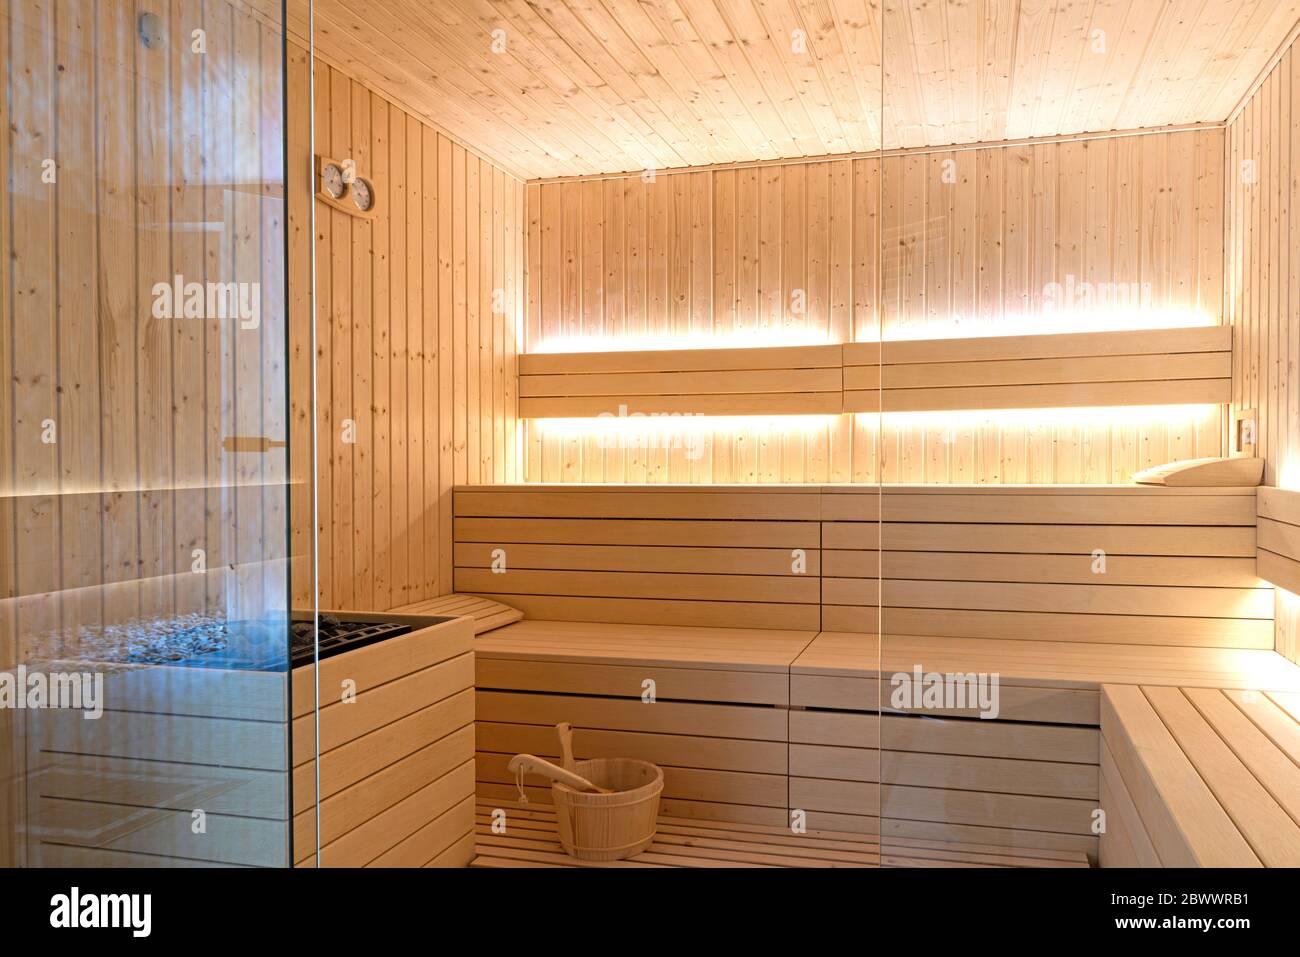 Leere Innenausstattung der traditionellen finnischen Sauna. Moderne Spa-Behandlungskabine aus Holz mit heißem Trockendampf Stockfoto